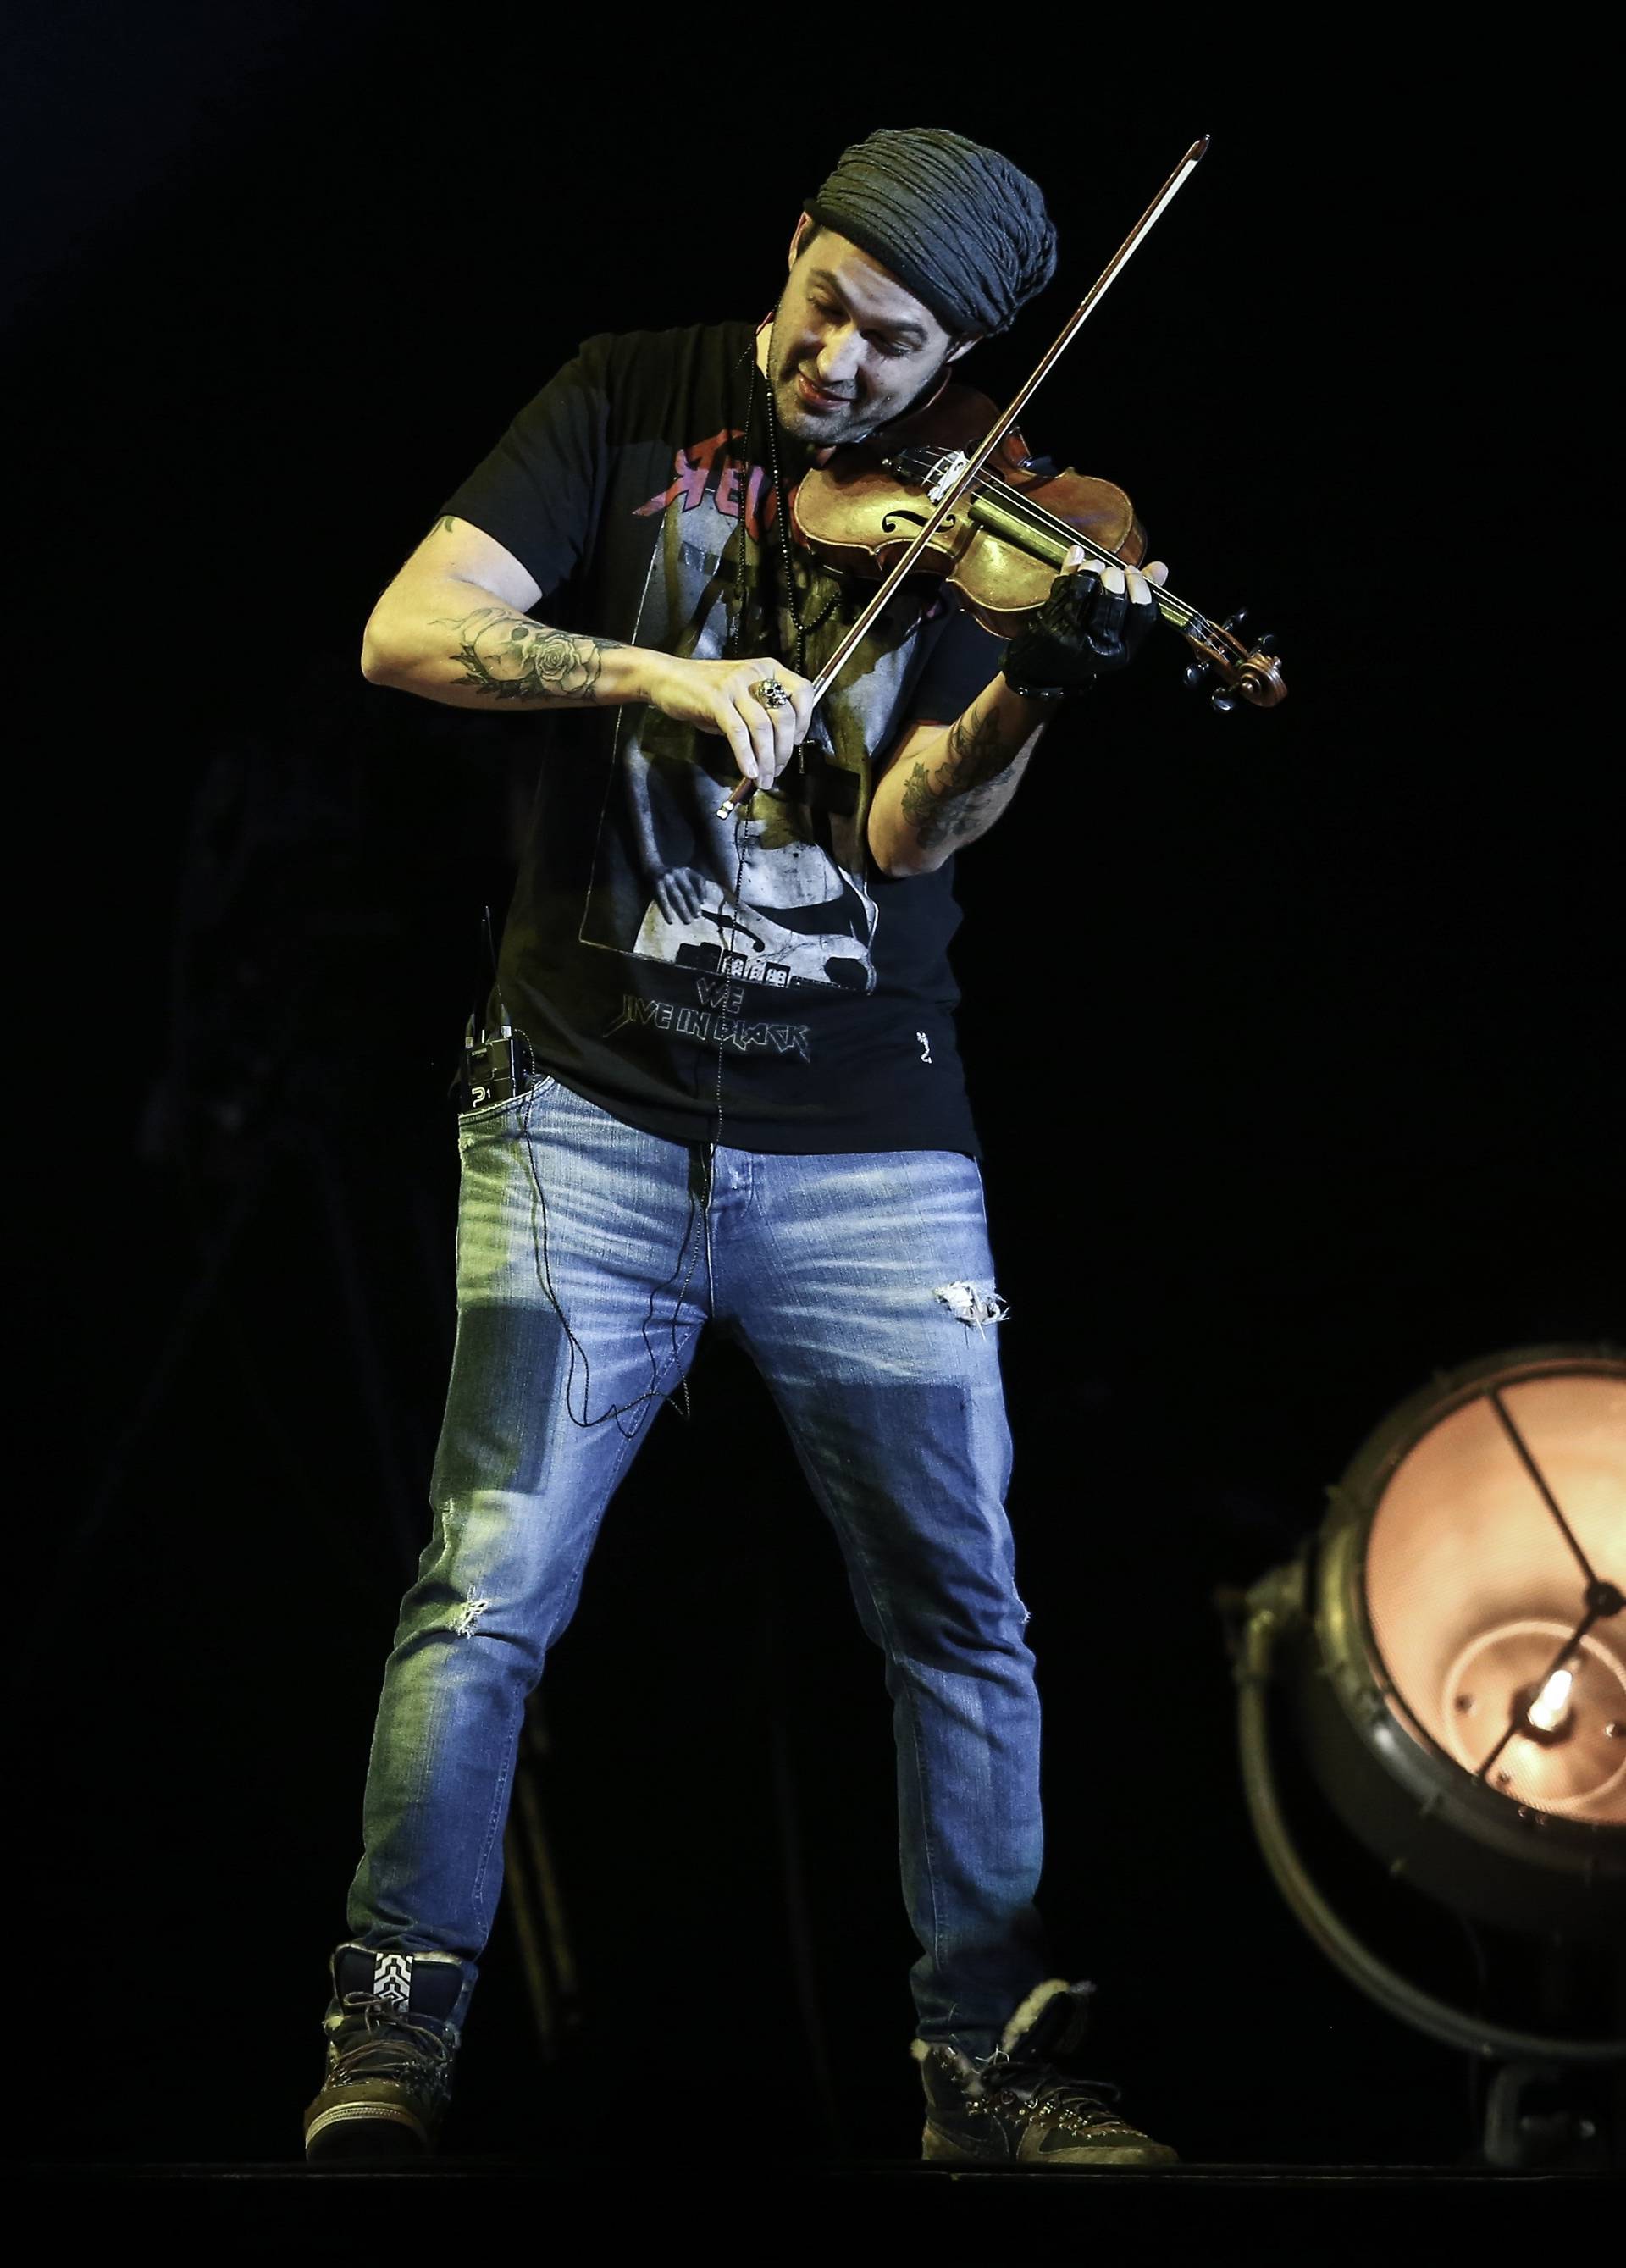 Zagreb: U Areni odrÅ¾an koncert violinista Davida Garretta